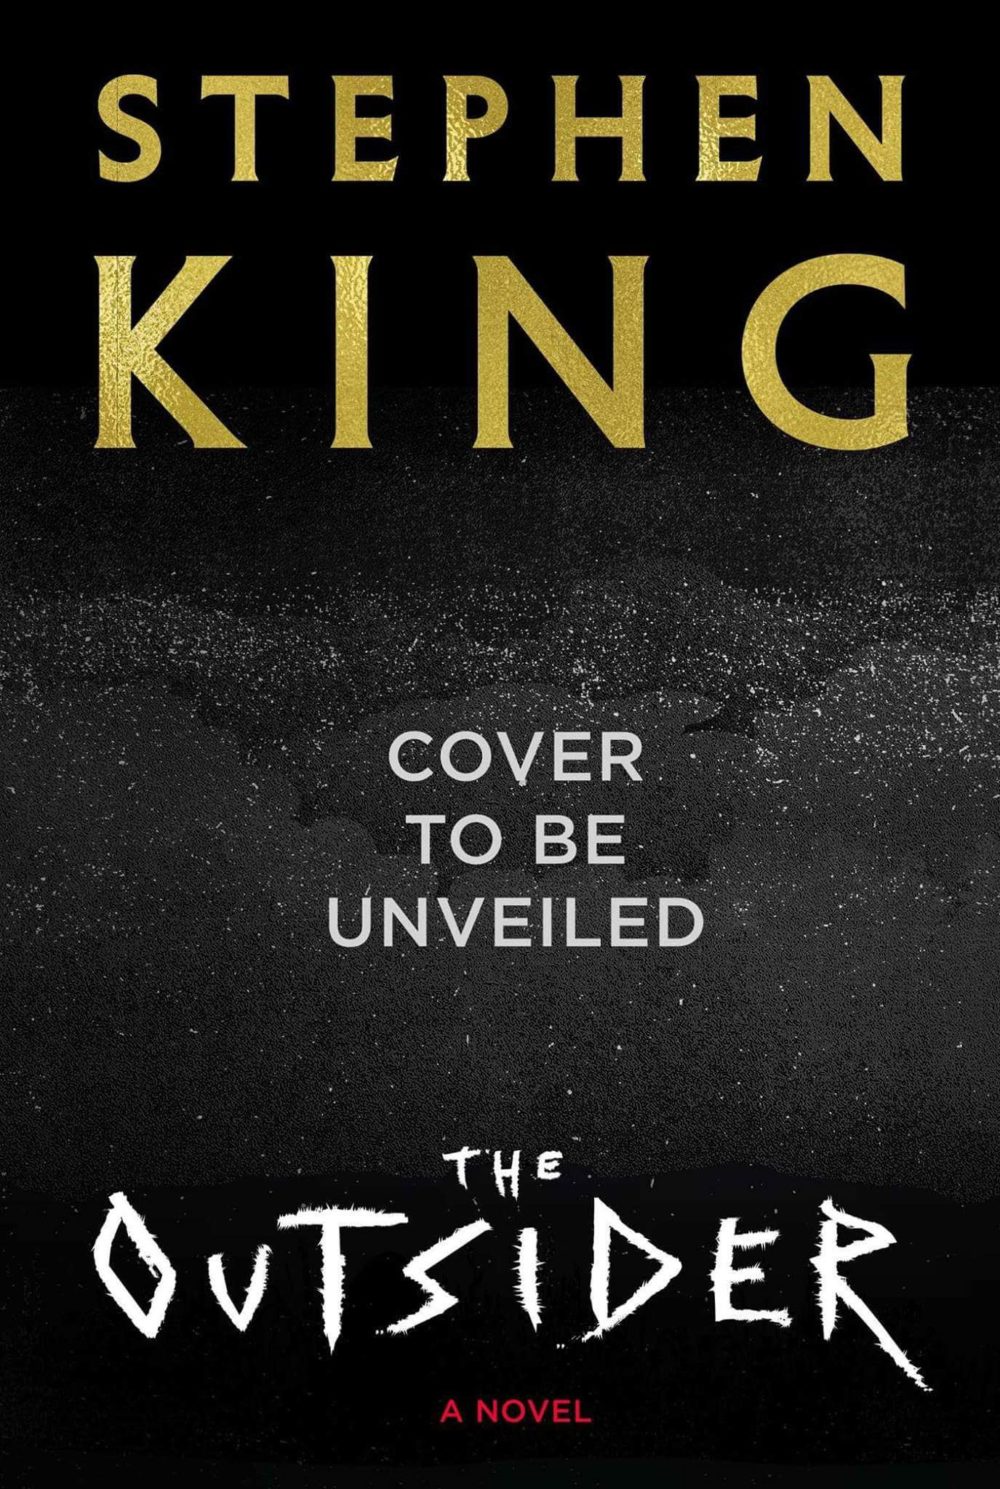 Novo livro de Stephen King será lançado em 2018